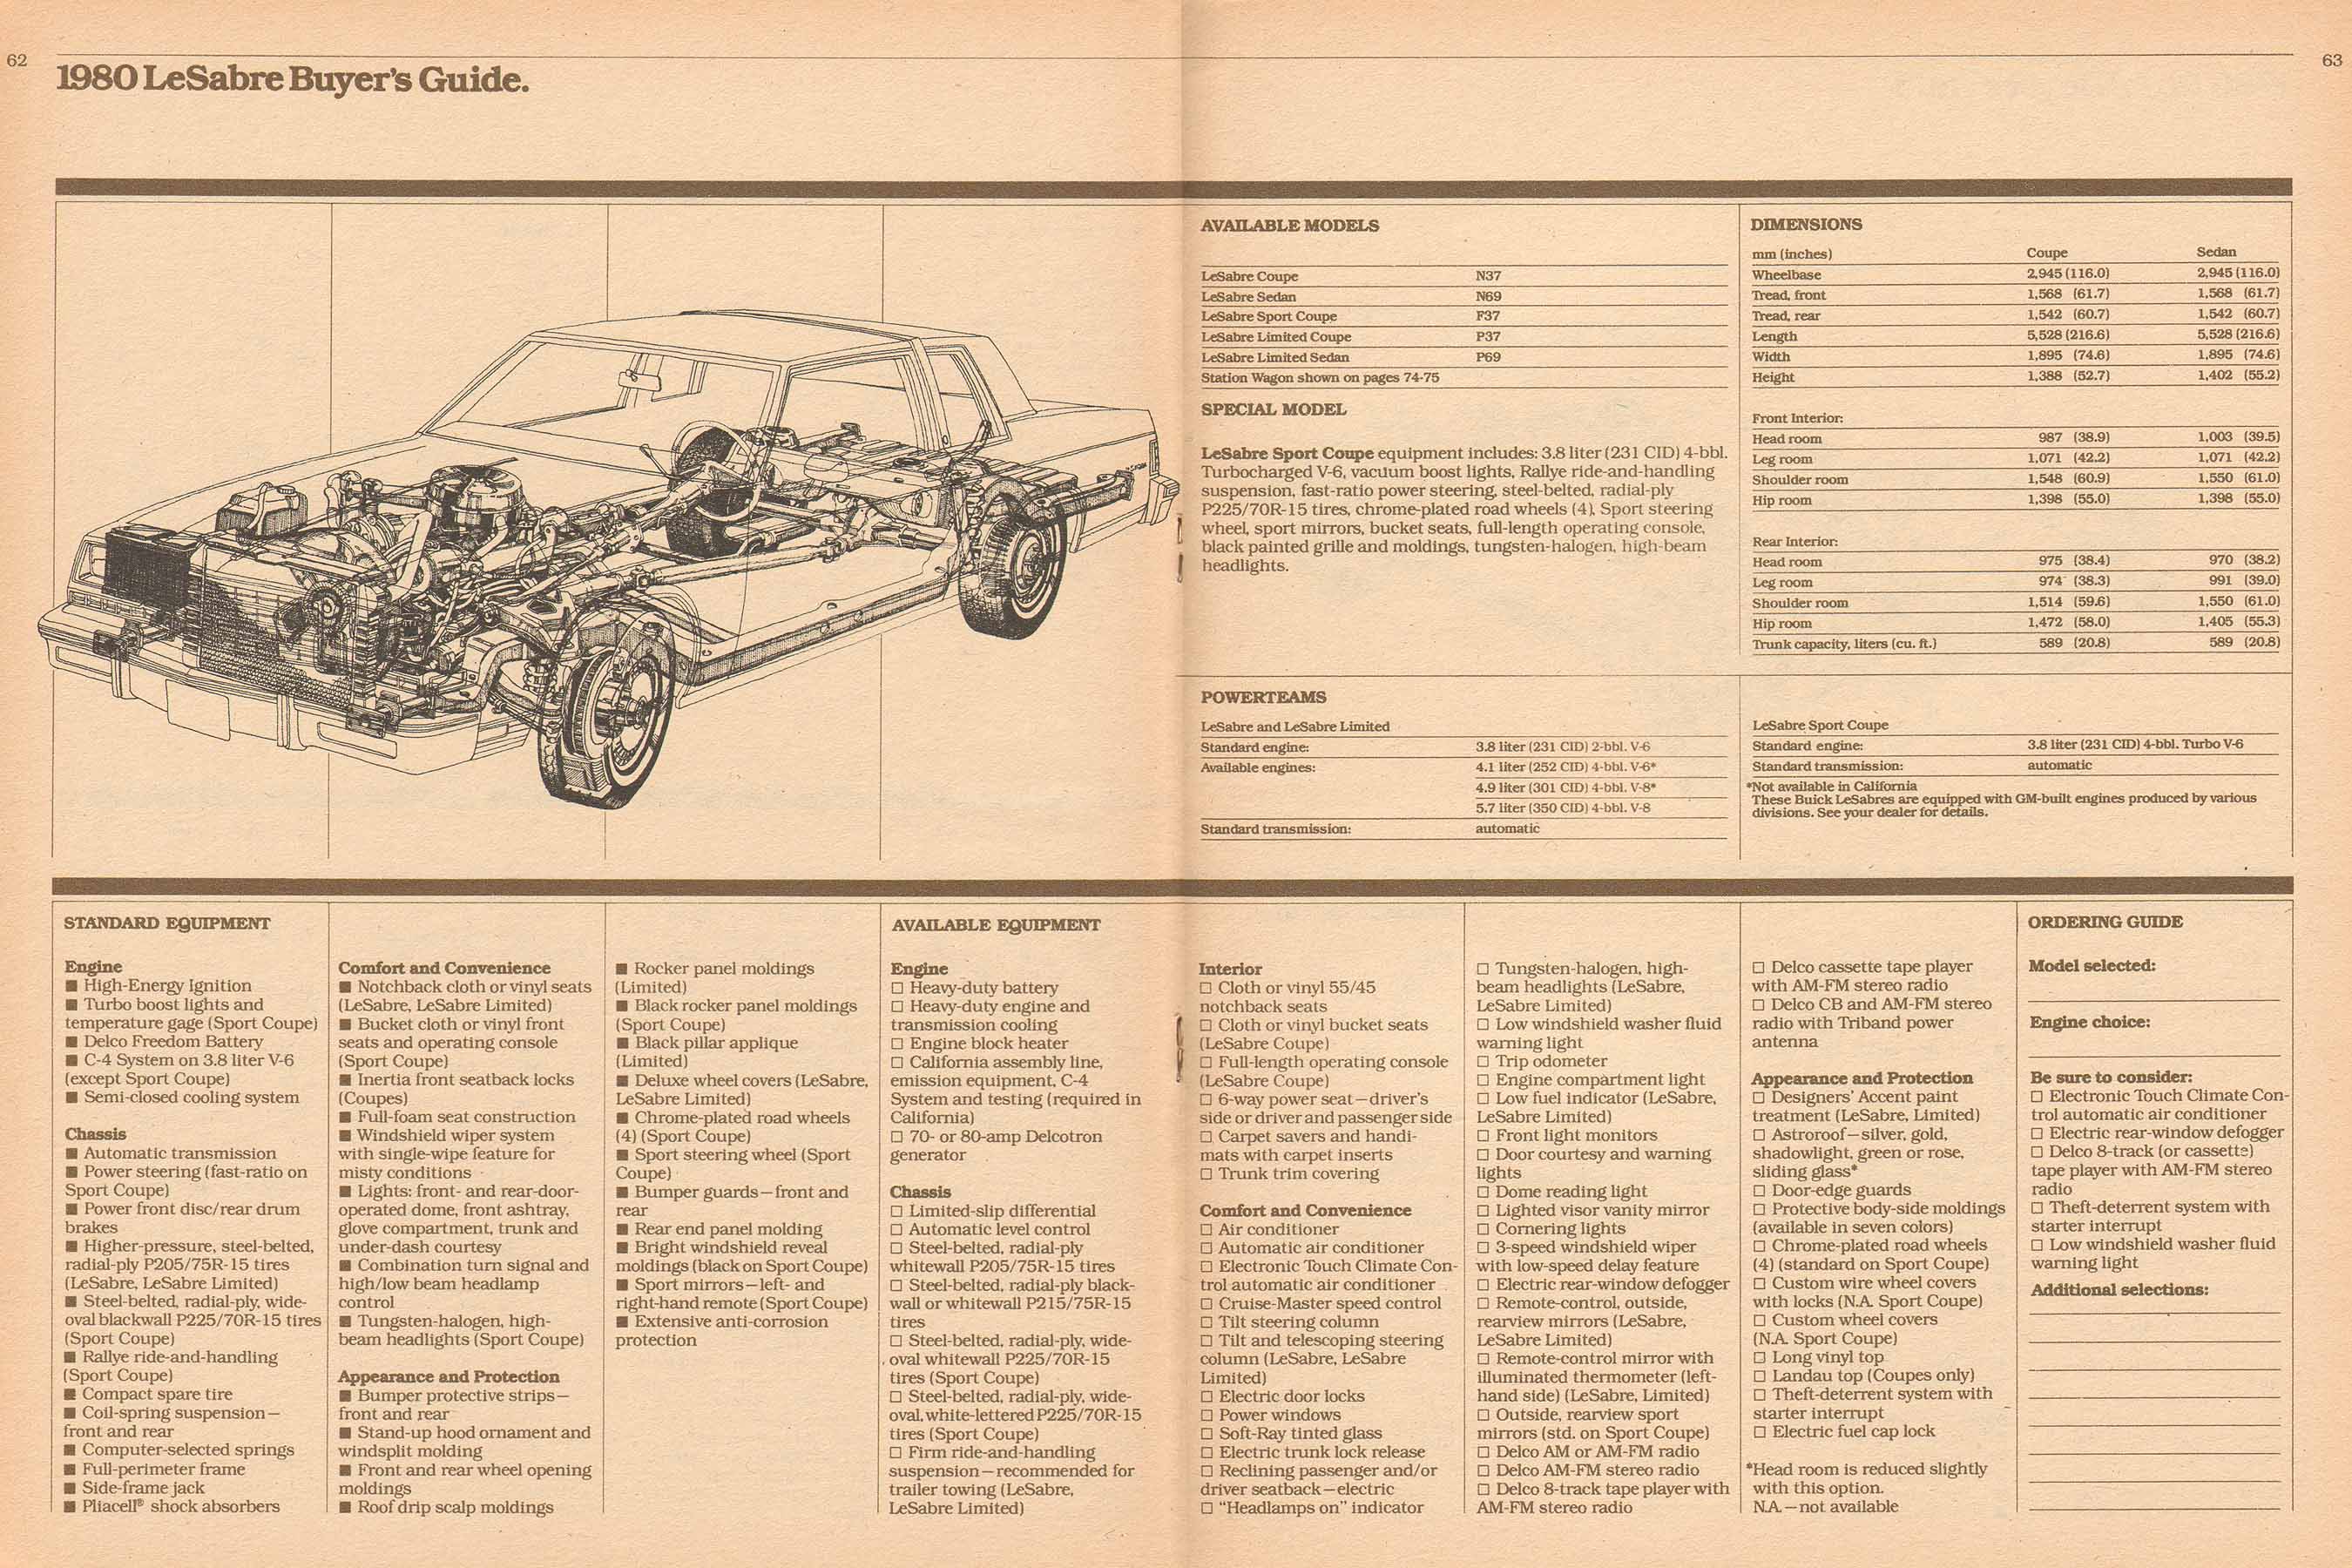 1980 Buick Full Line Prestige-62-63